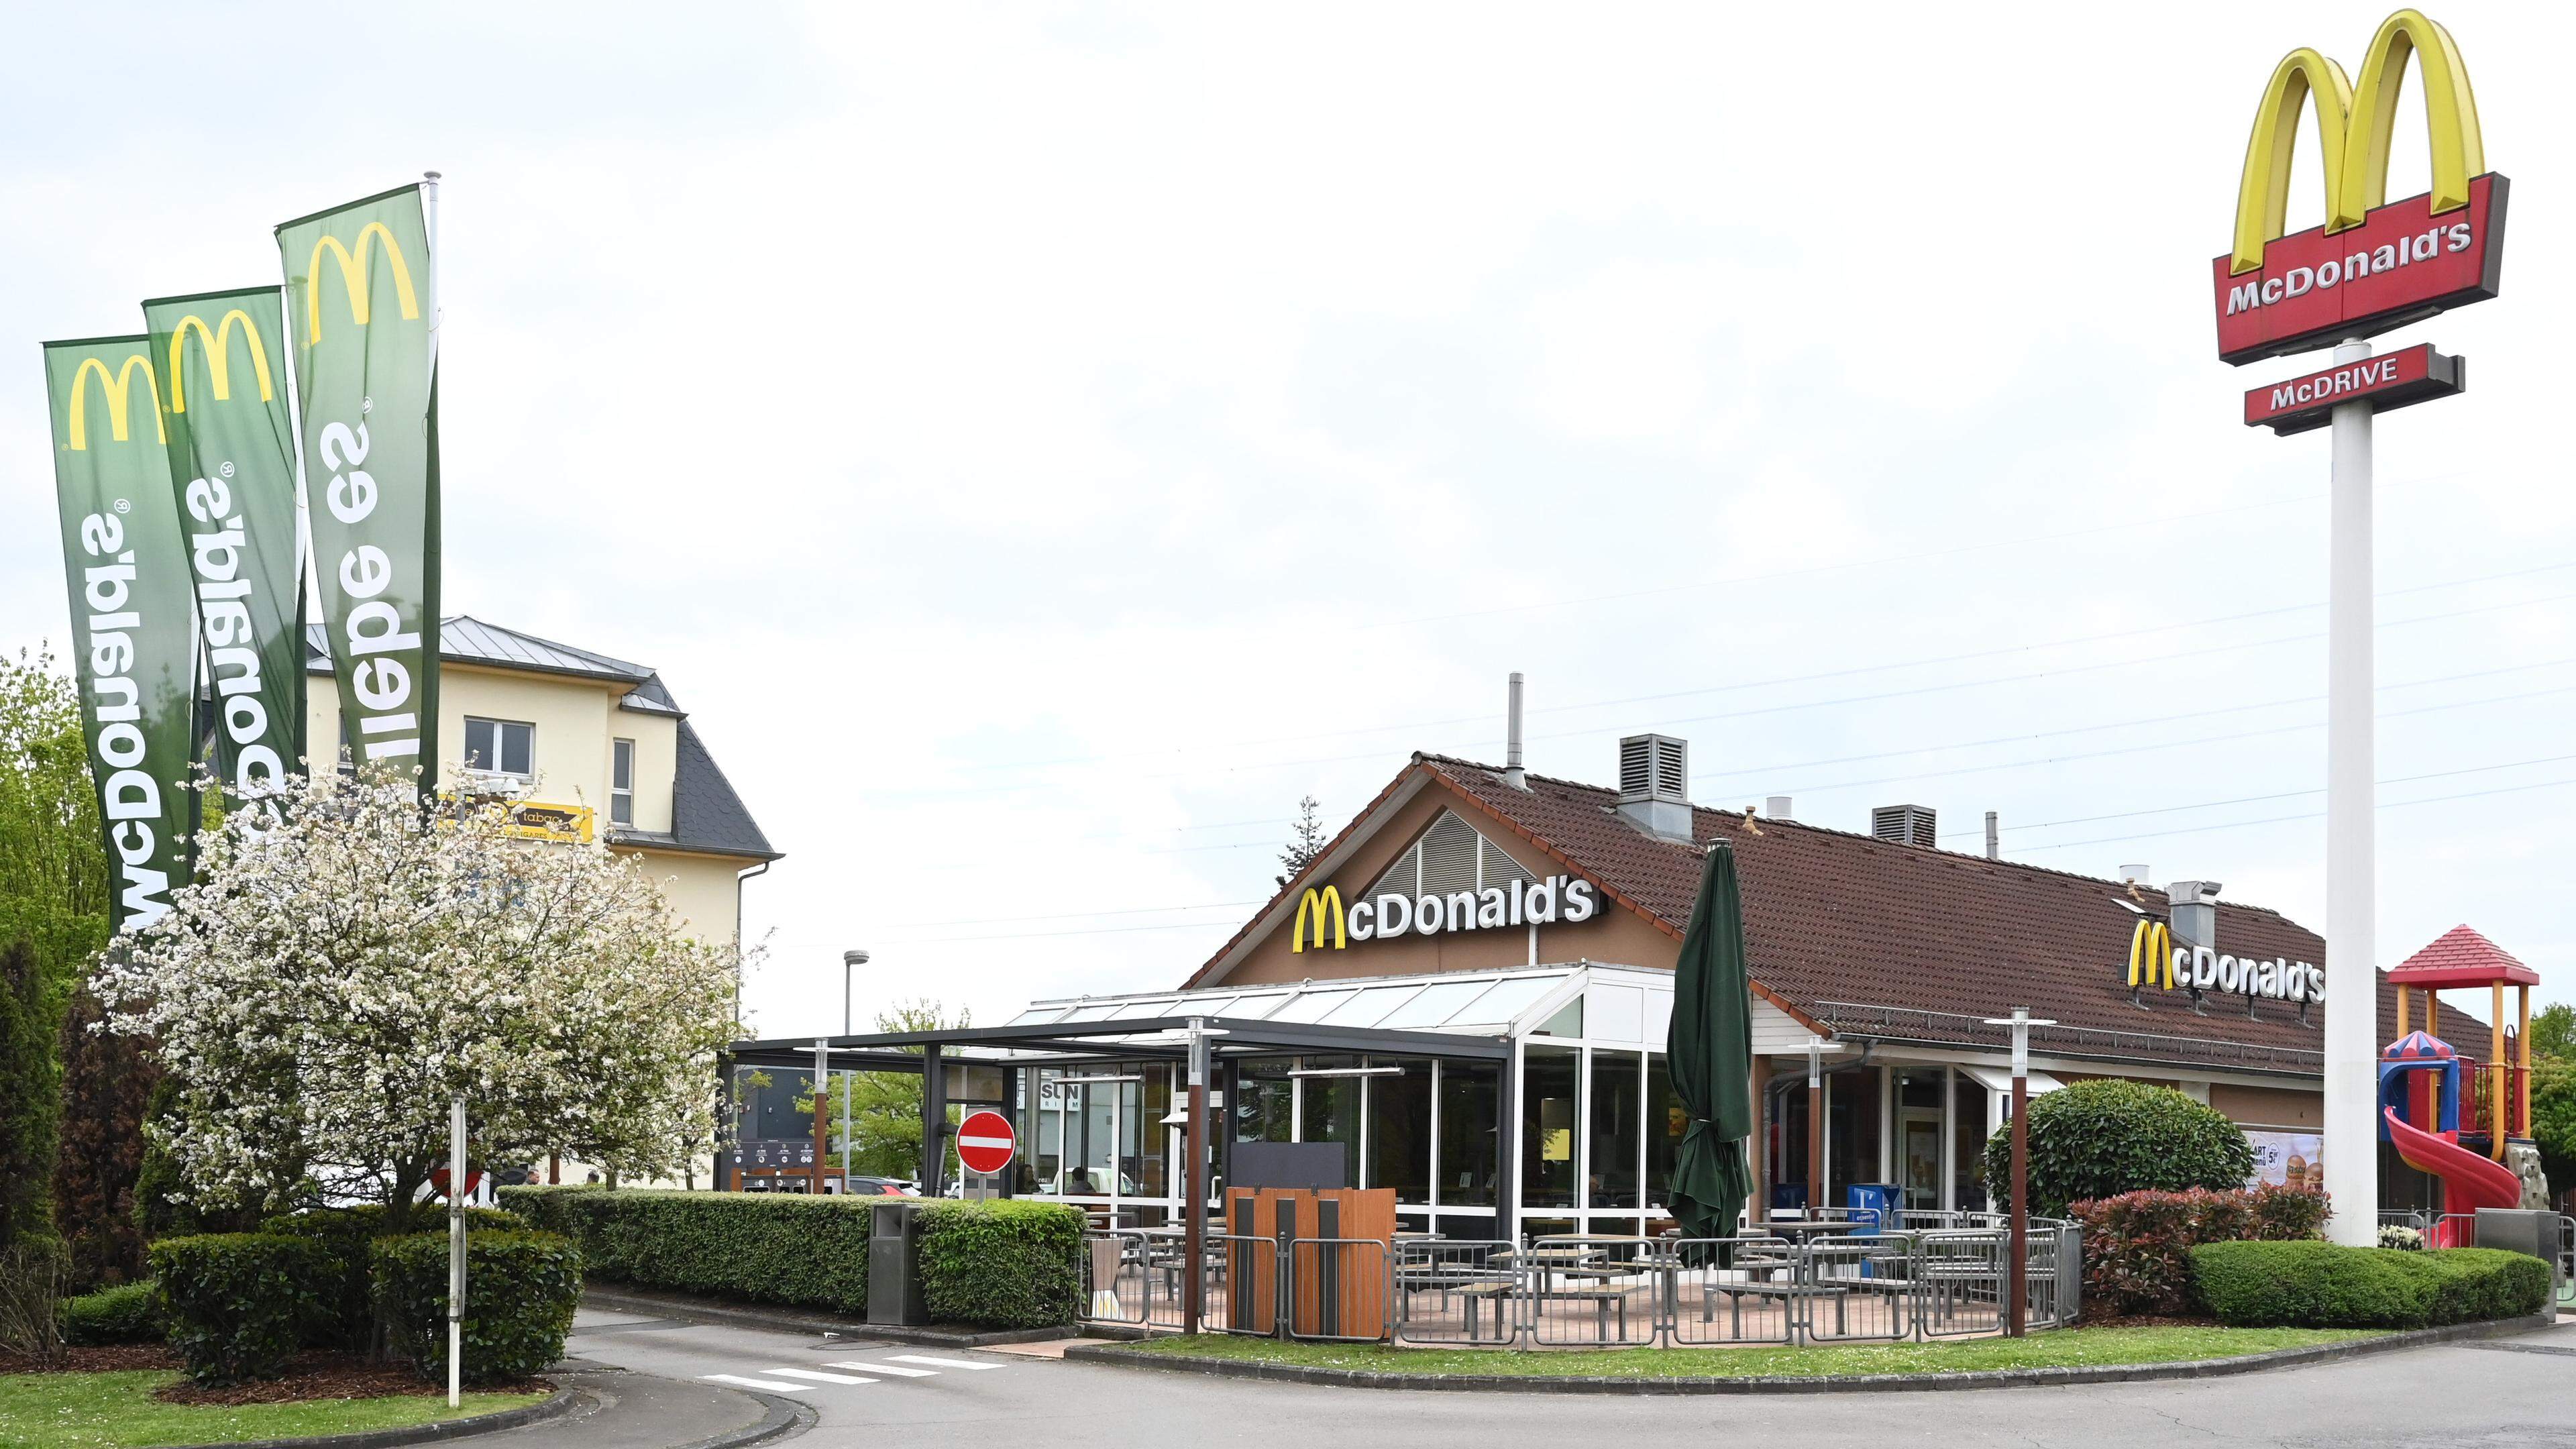 McDonald’s marque le paysage à l’entrée de la zone industrielle de Foetz.